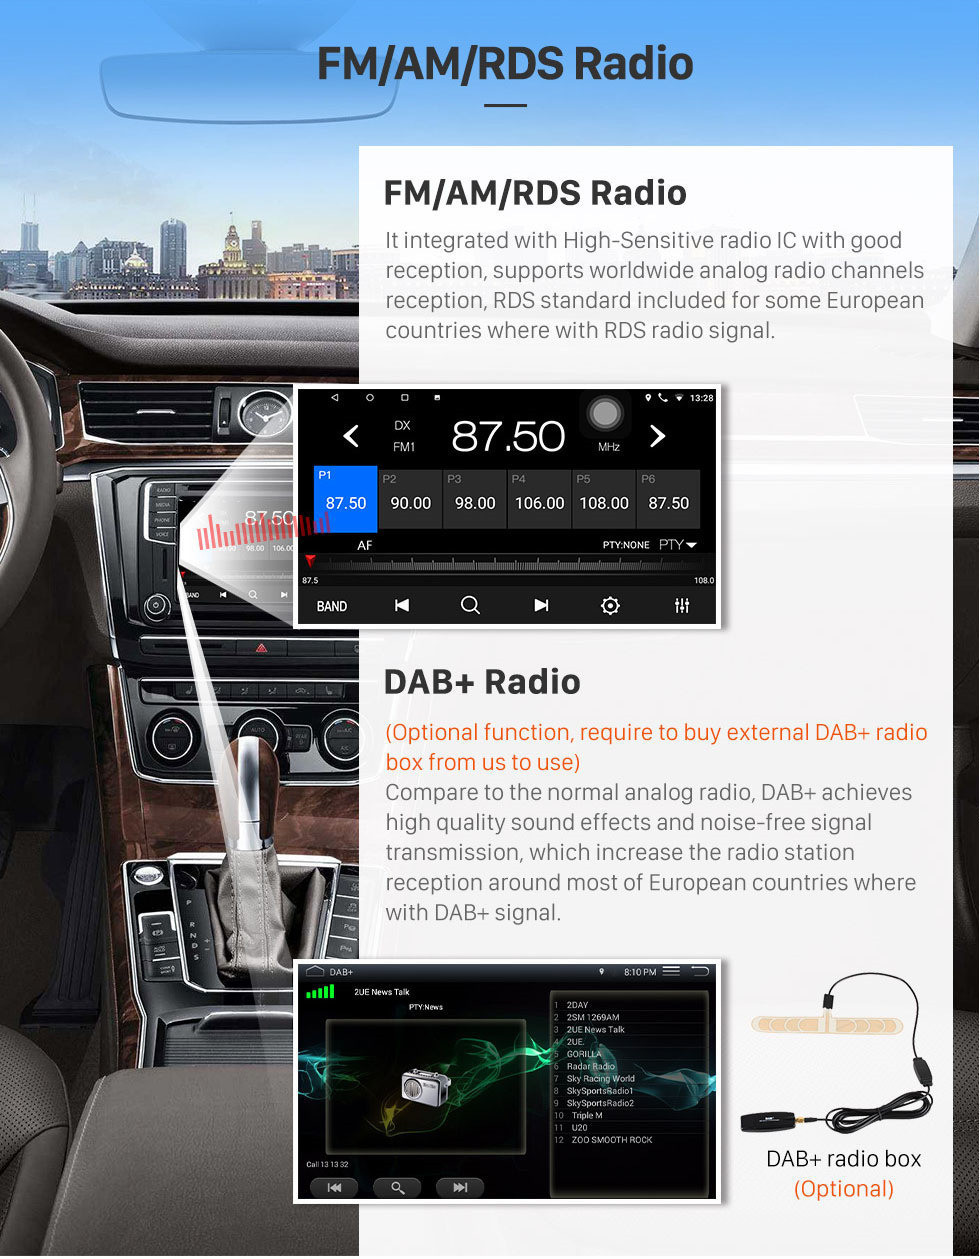 Seicane 9 Polegada Android 10.0 sistema de Navegação GPS rádio da Tela de Toque Para 2010-2014 Toyota velha coroa LHD Bluetooth PMS DVR OBD II Câmera USB traseira controle de volante